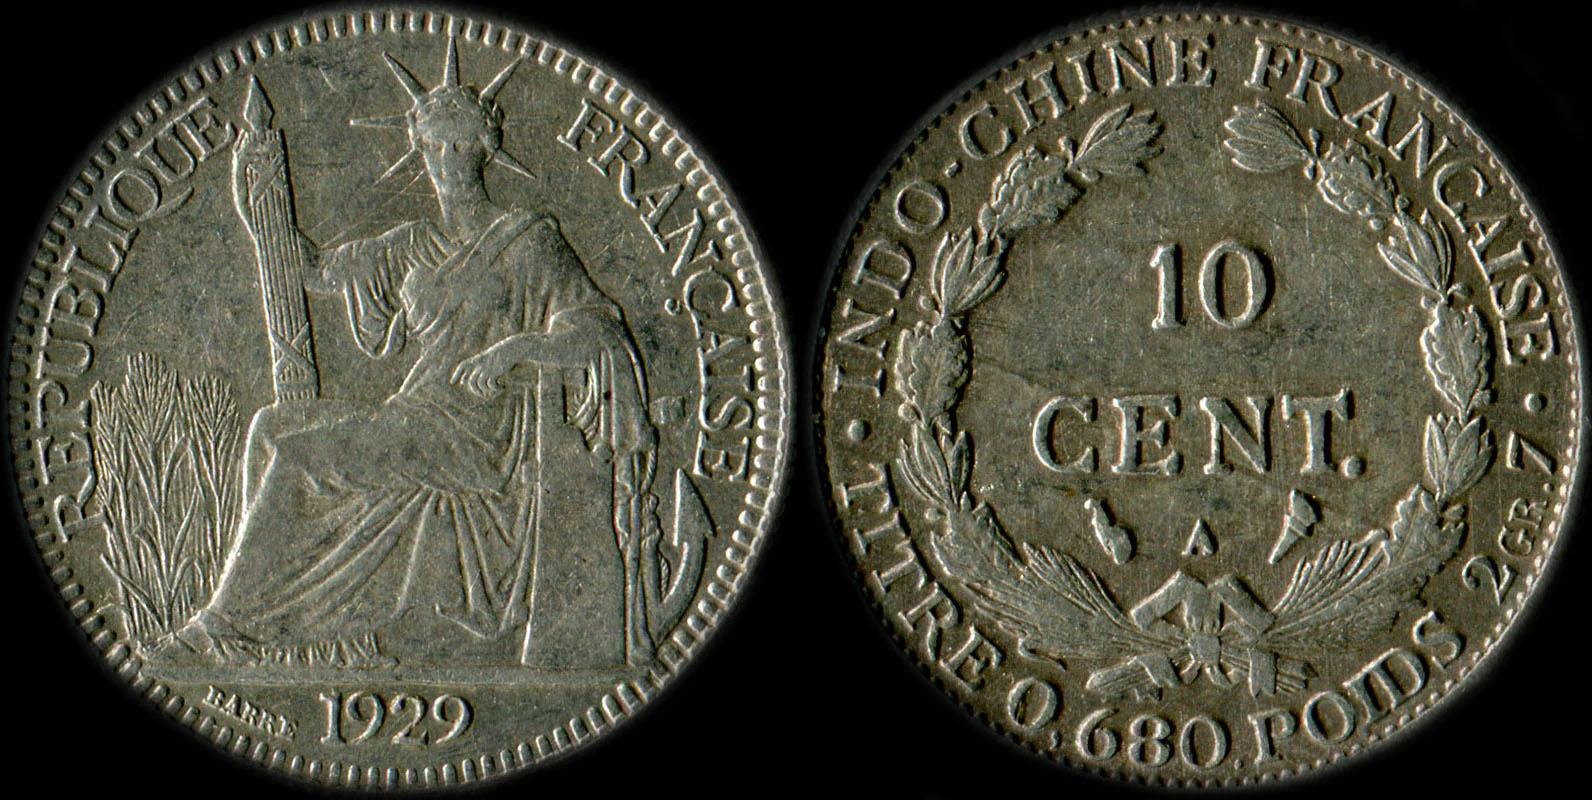 Pice de 10 centimes Indochine 1929